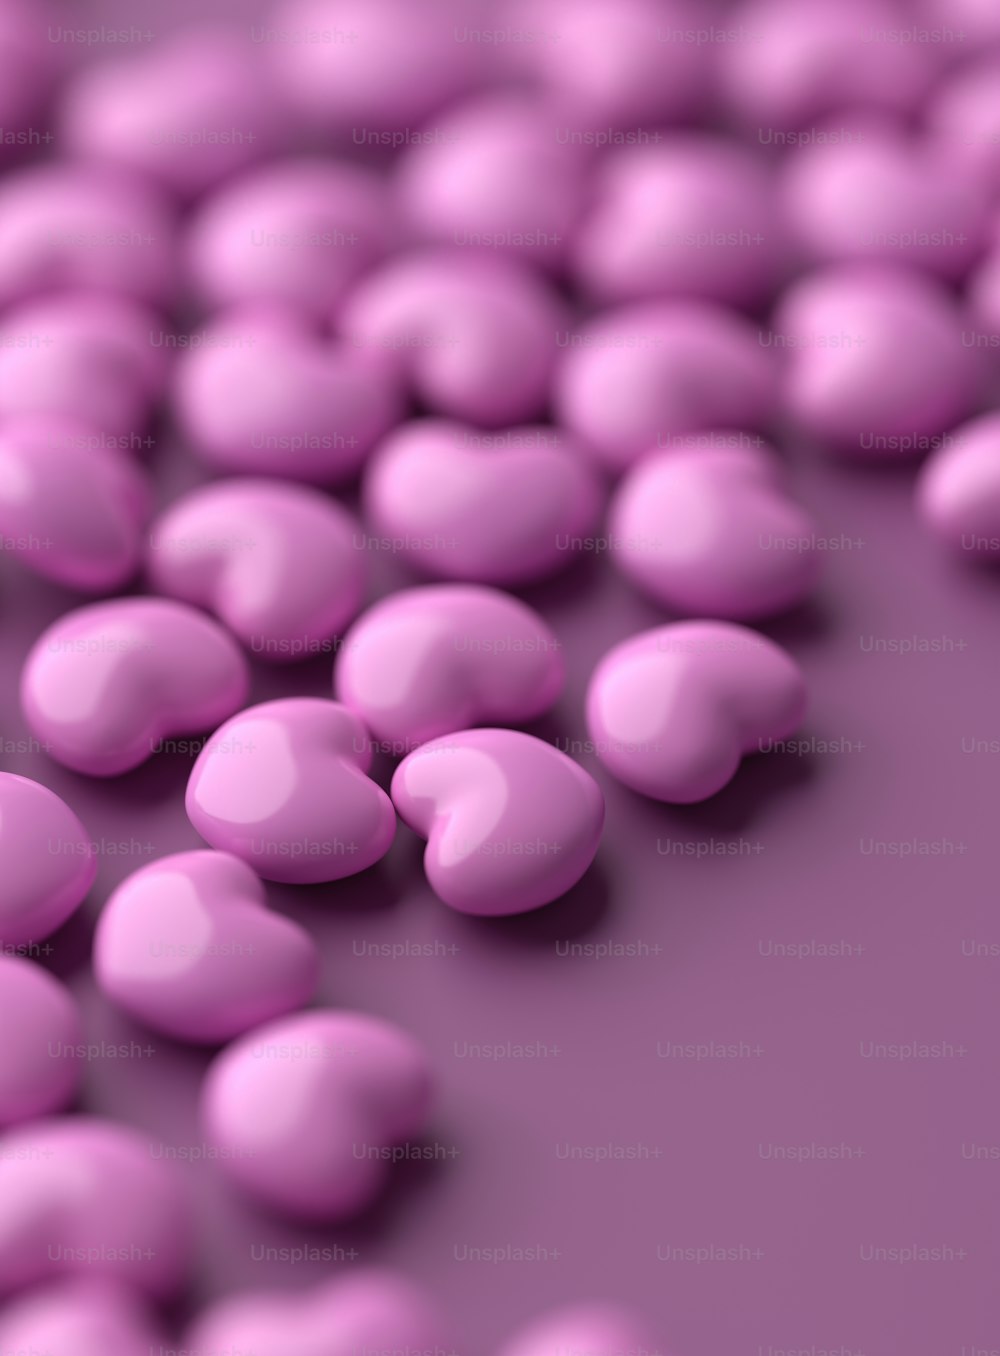 Ein Haufen rosa Bonbonkugeln auf einer violetten Oberfläche